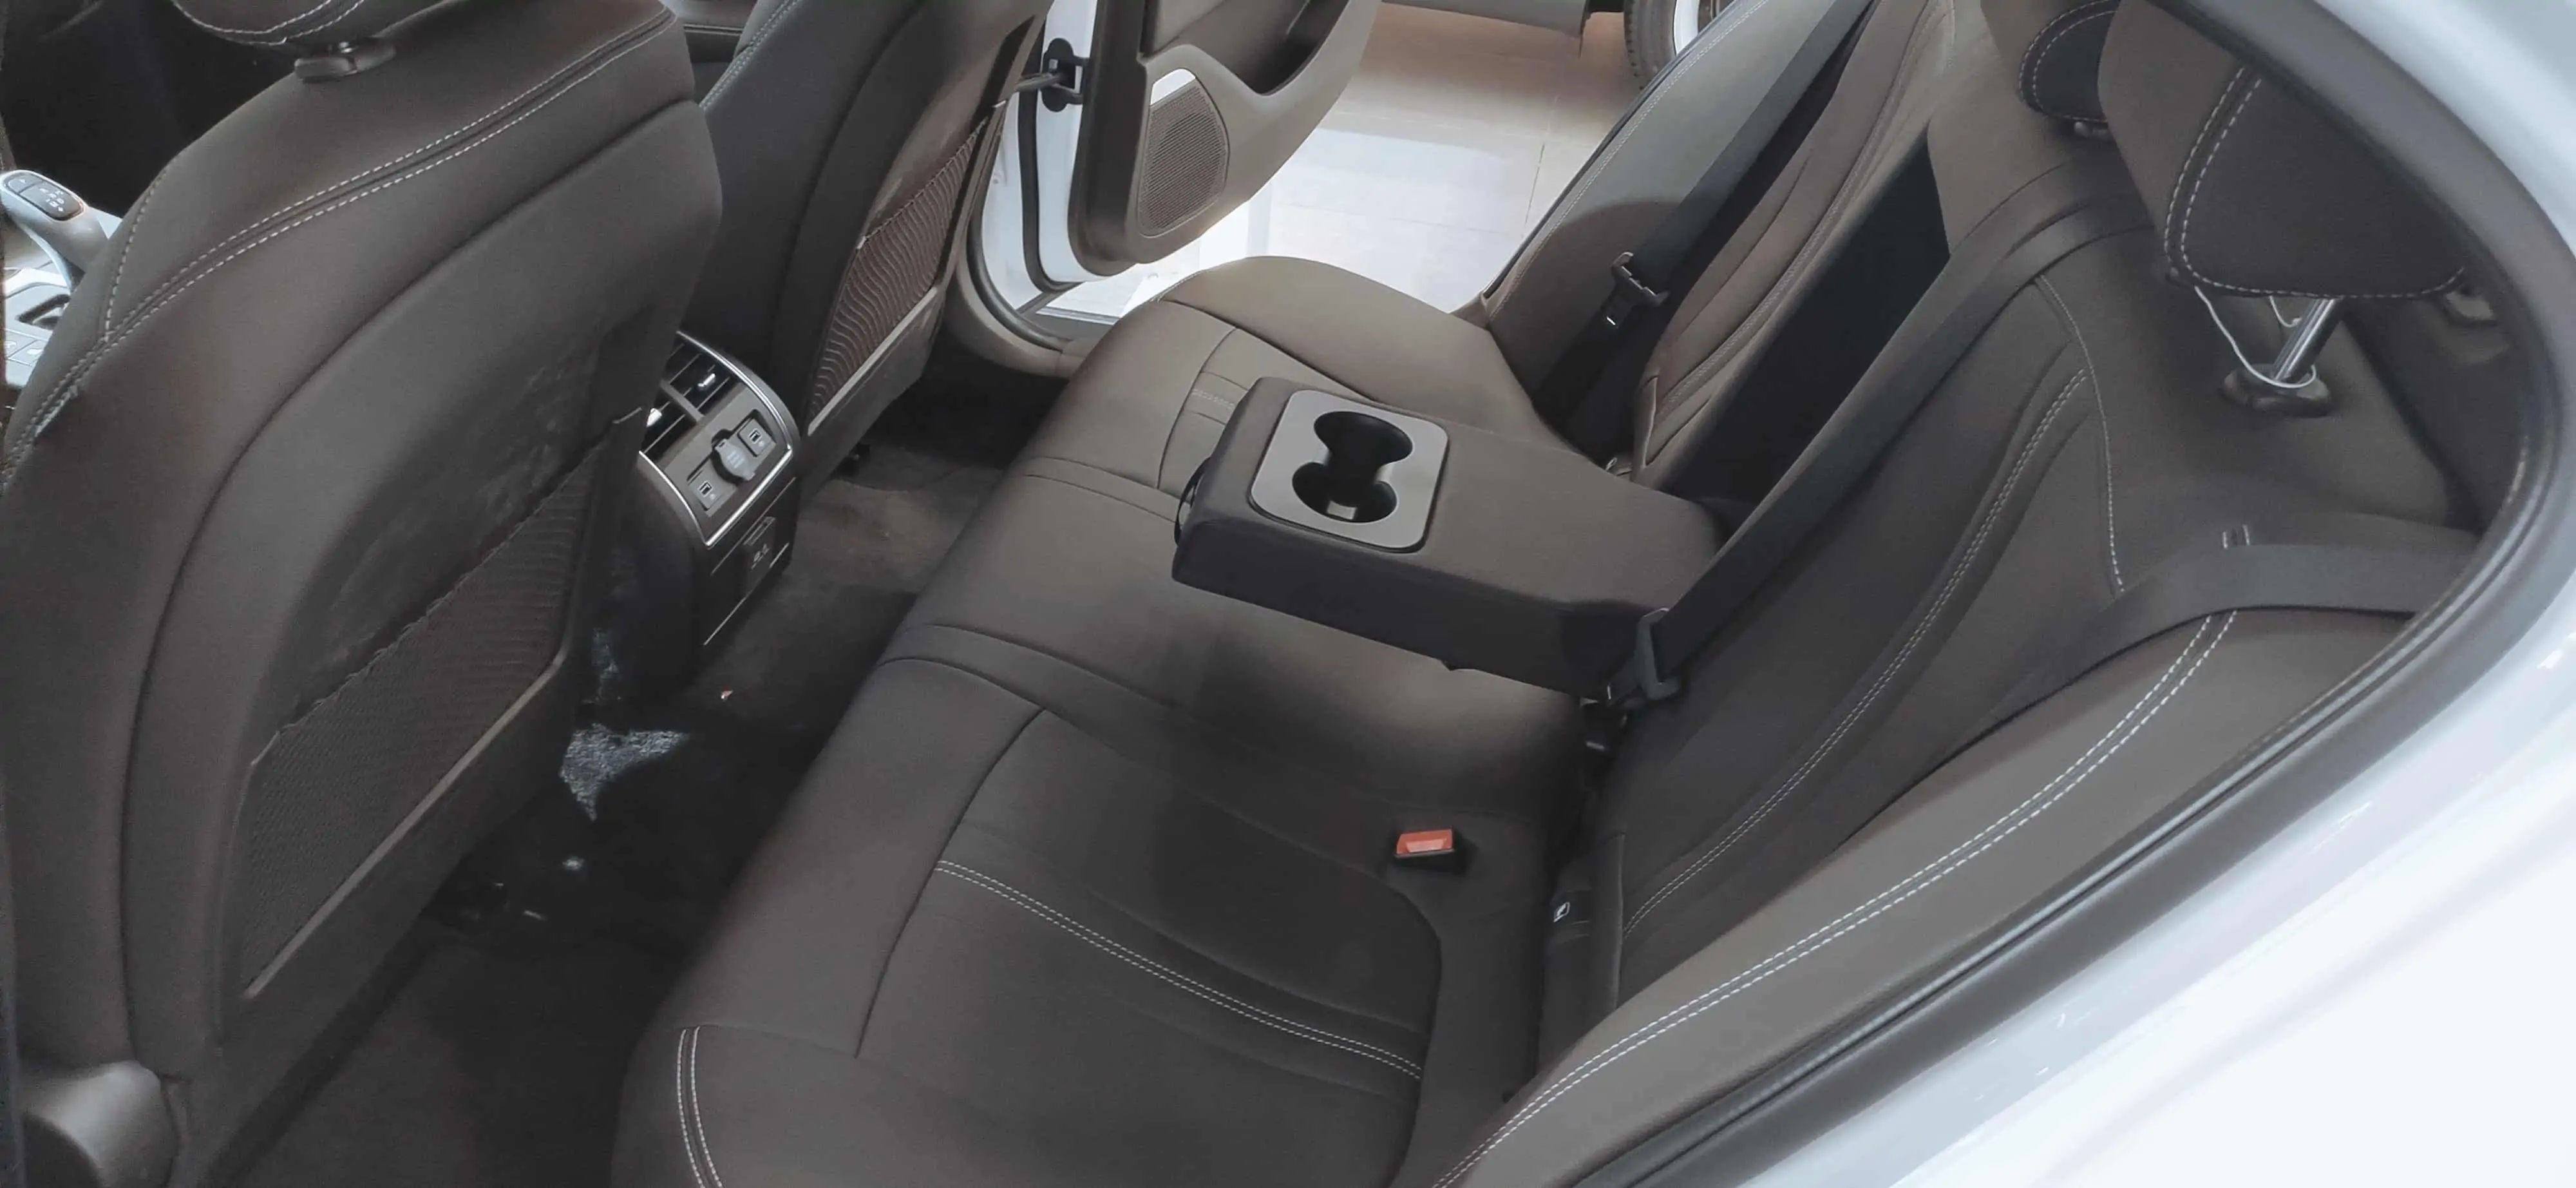 hàng ghế sau nội thất da tổng hợp màu đen của VinFast Lux A2.0 bản tiêu chuẩn ( base ) và VinFast Lux A 2.0 bản nâng cao ( plus )